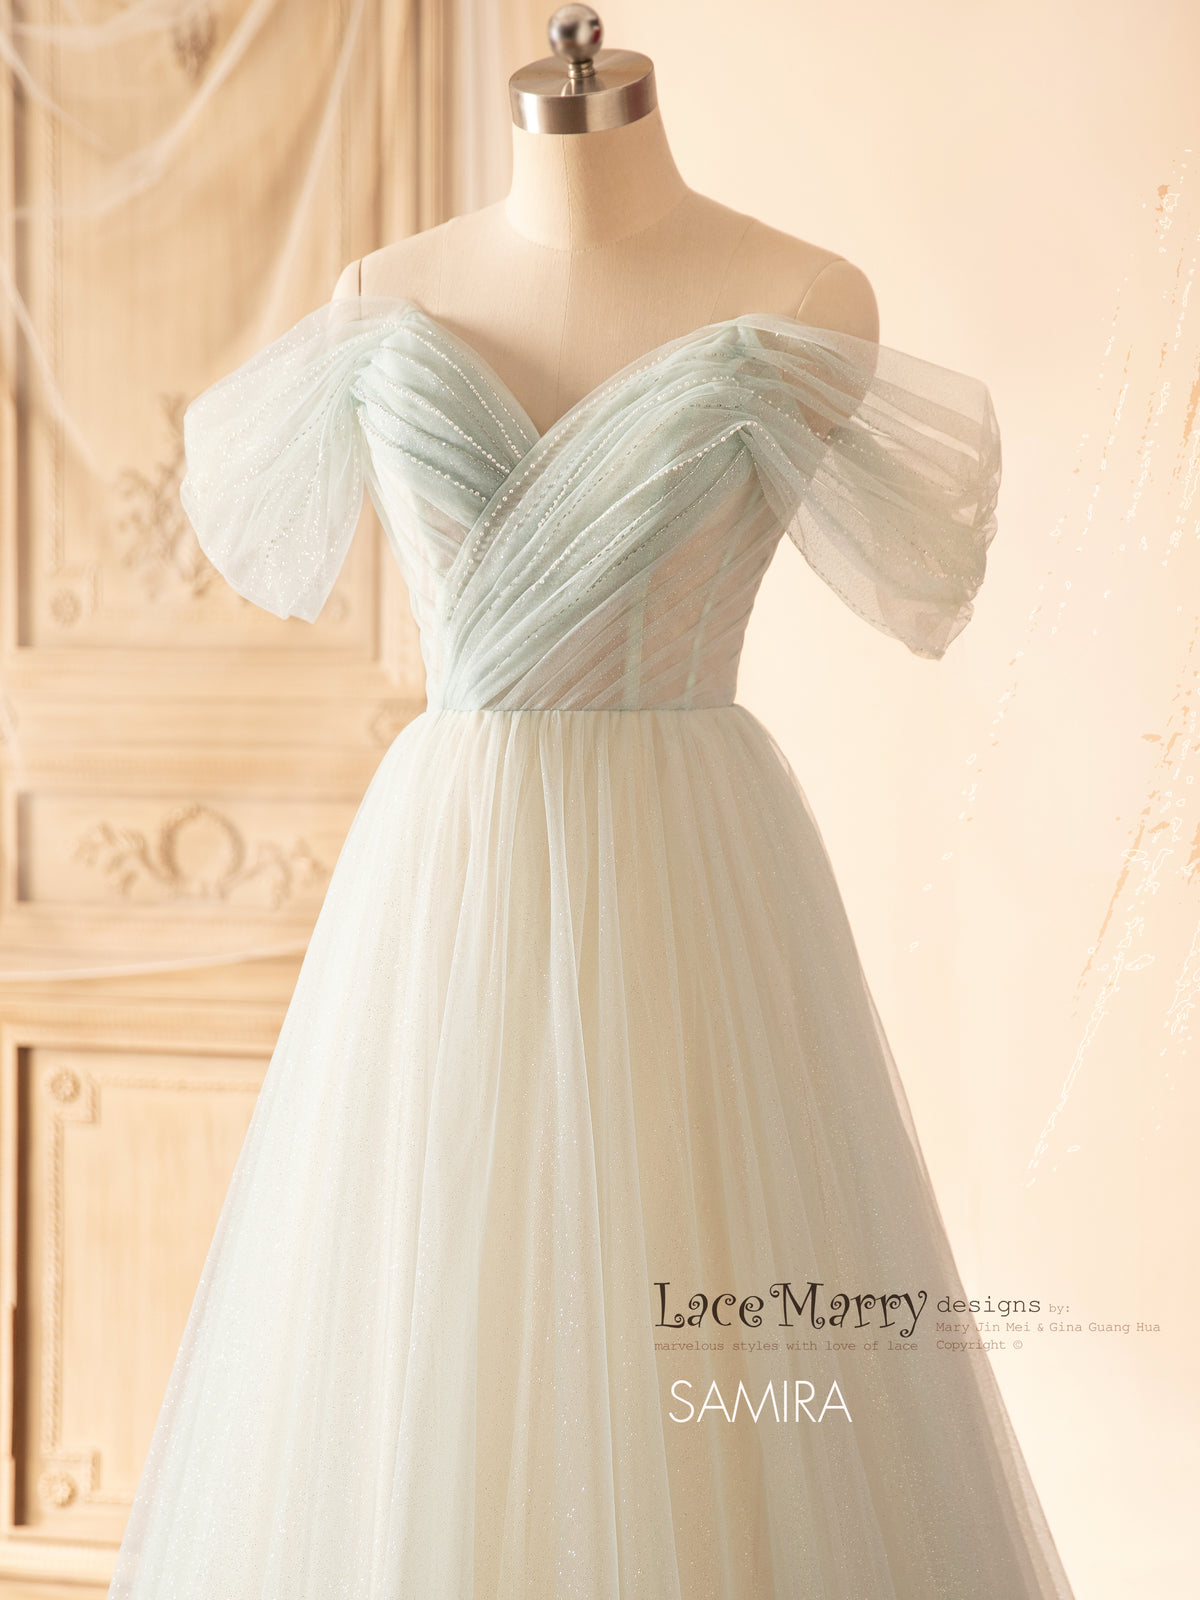 SAMIRA / Light Green Wedding Dress with Off Shoulder Straps